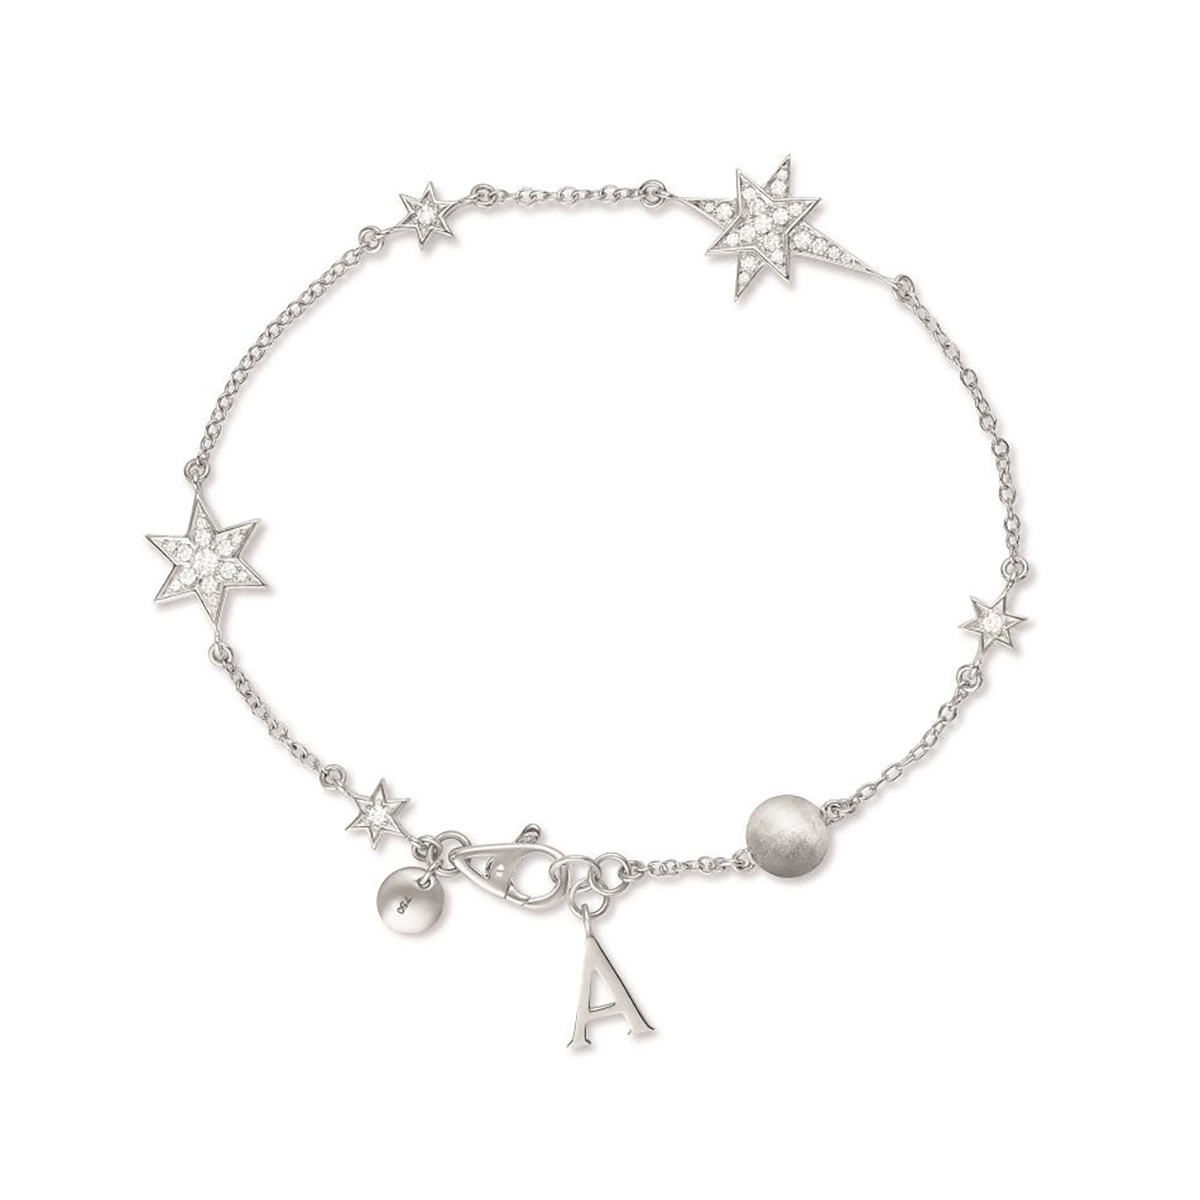 Cosmic Stargazer Bracelet in 18ct White Gold with Diamonds